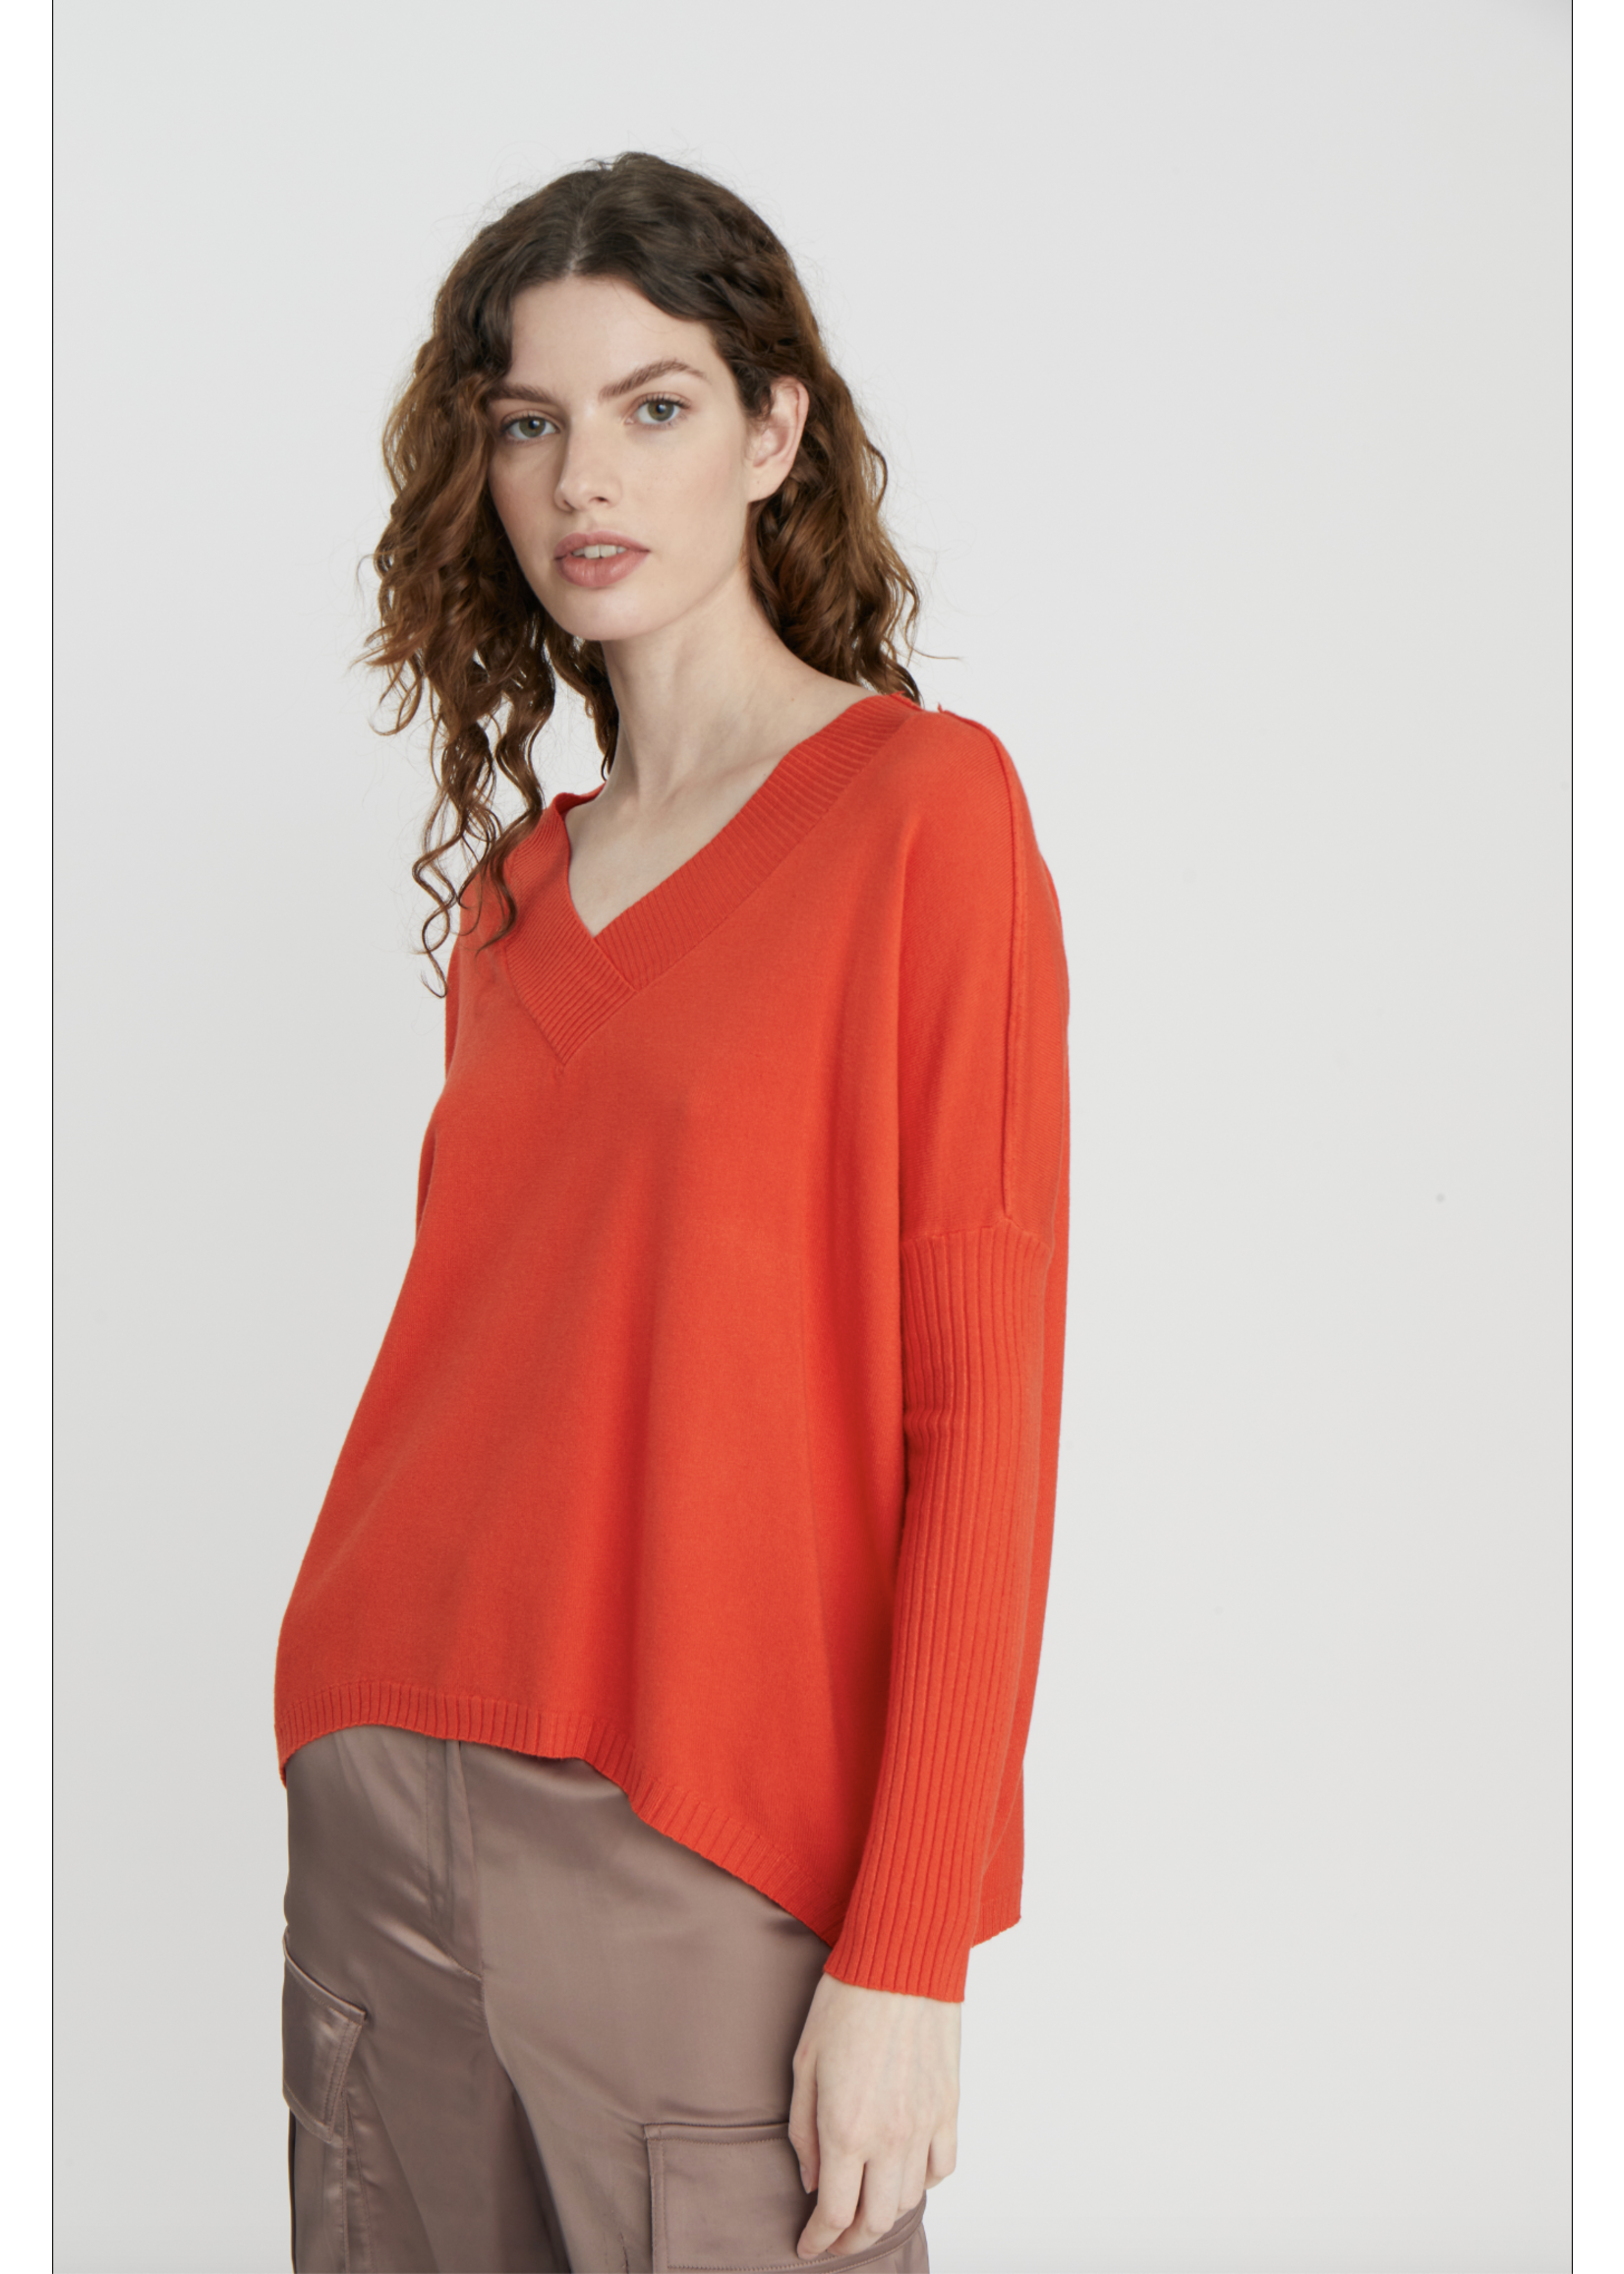 Deluc Velvet Sweater - 9135D